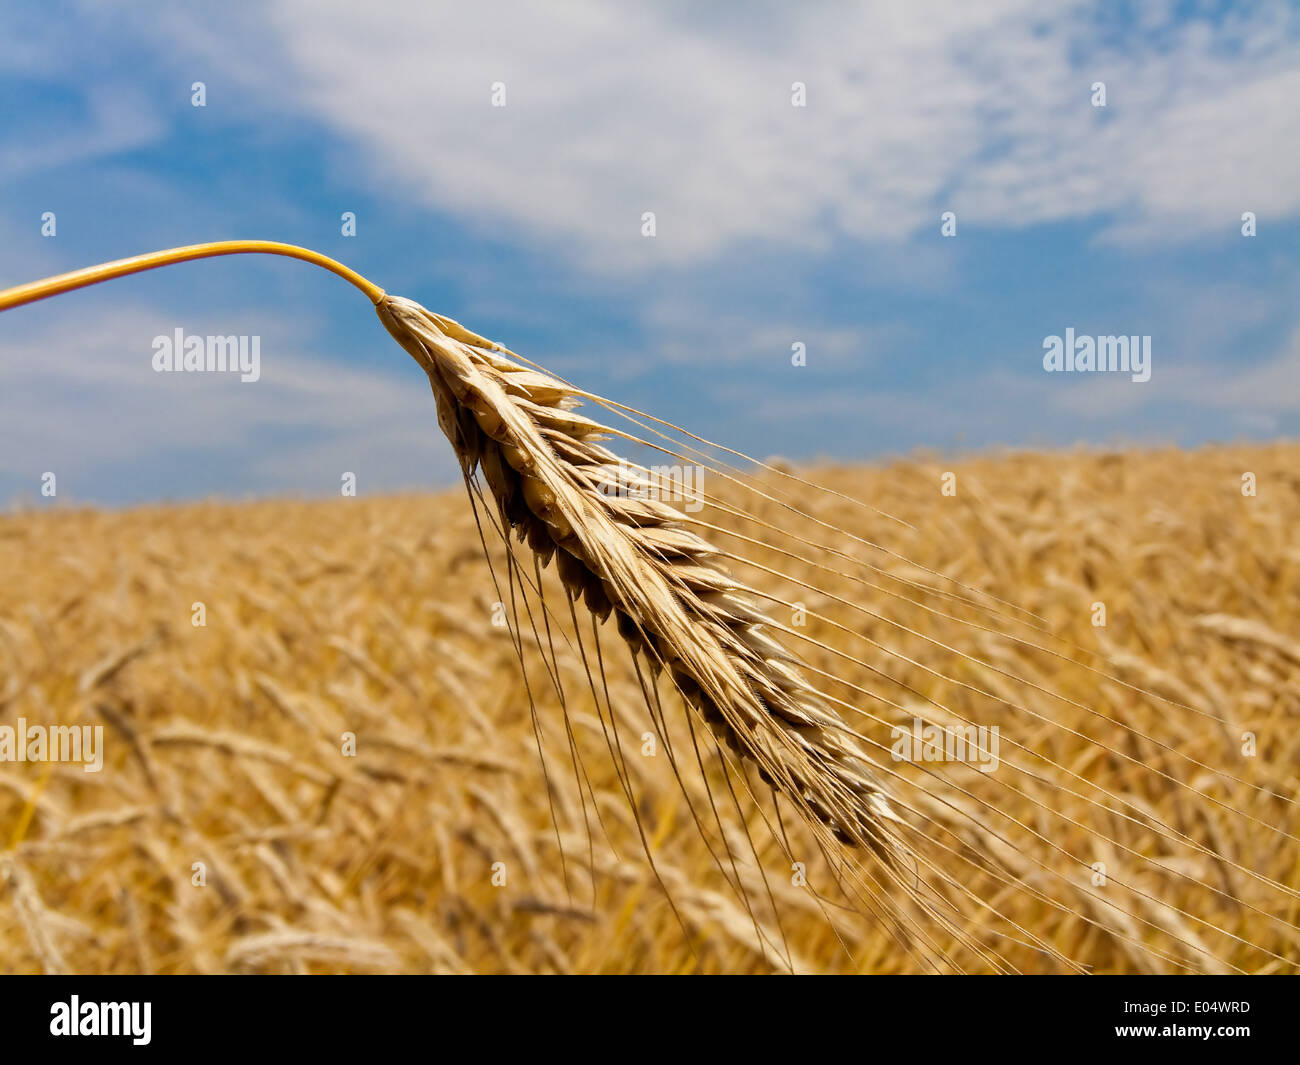 Grain field with barley ear in buzzer, Getreide Feld mit Gersten Ähre im Sommer Stock Photo